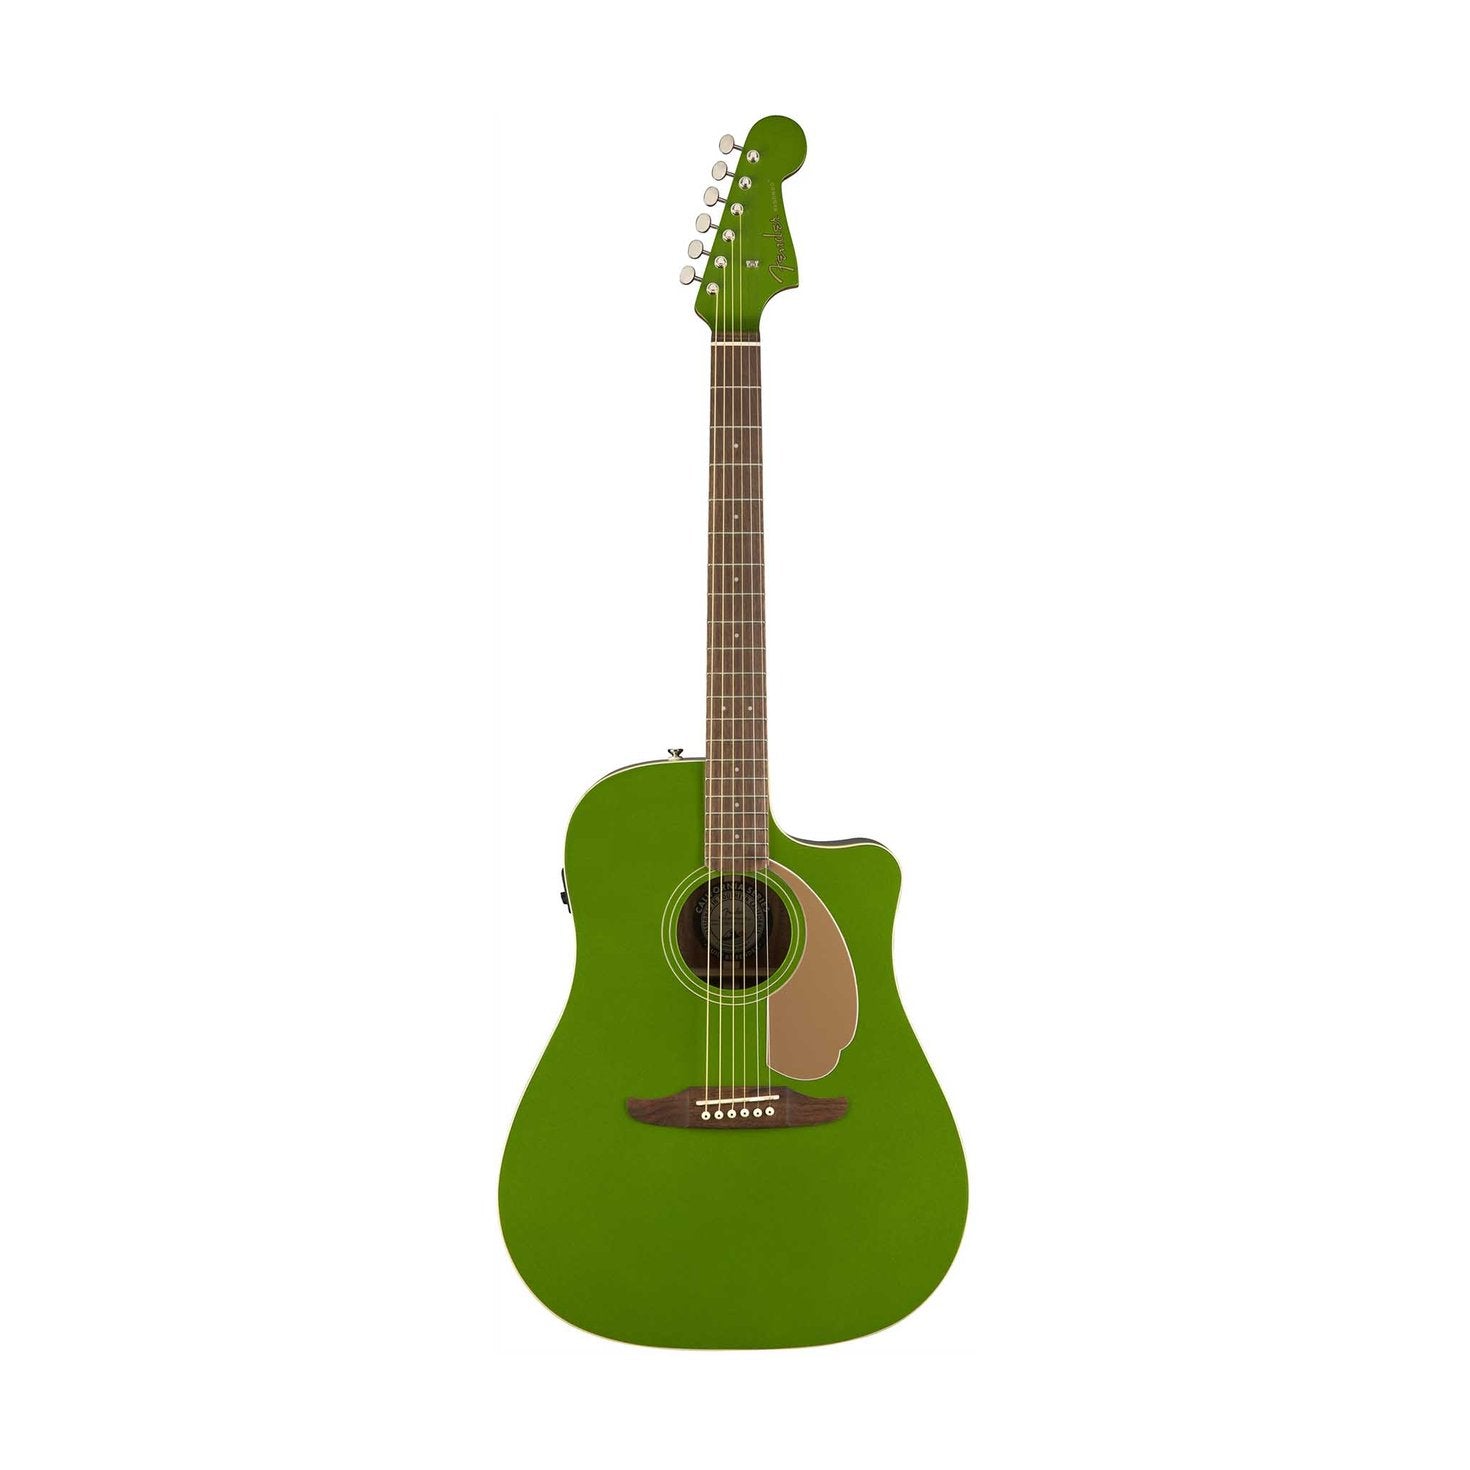 Fender Redondo Player Slope-Shouldered Acoustic Guitar, Electric Jade, FENDER, ACOUSTIC GUITAR, fender-acoustic-guitar-f03-097-0713-019, ZOSO MUSIC SDN BHD